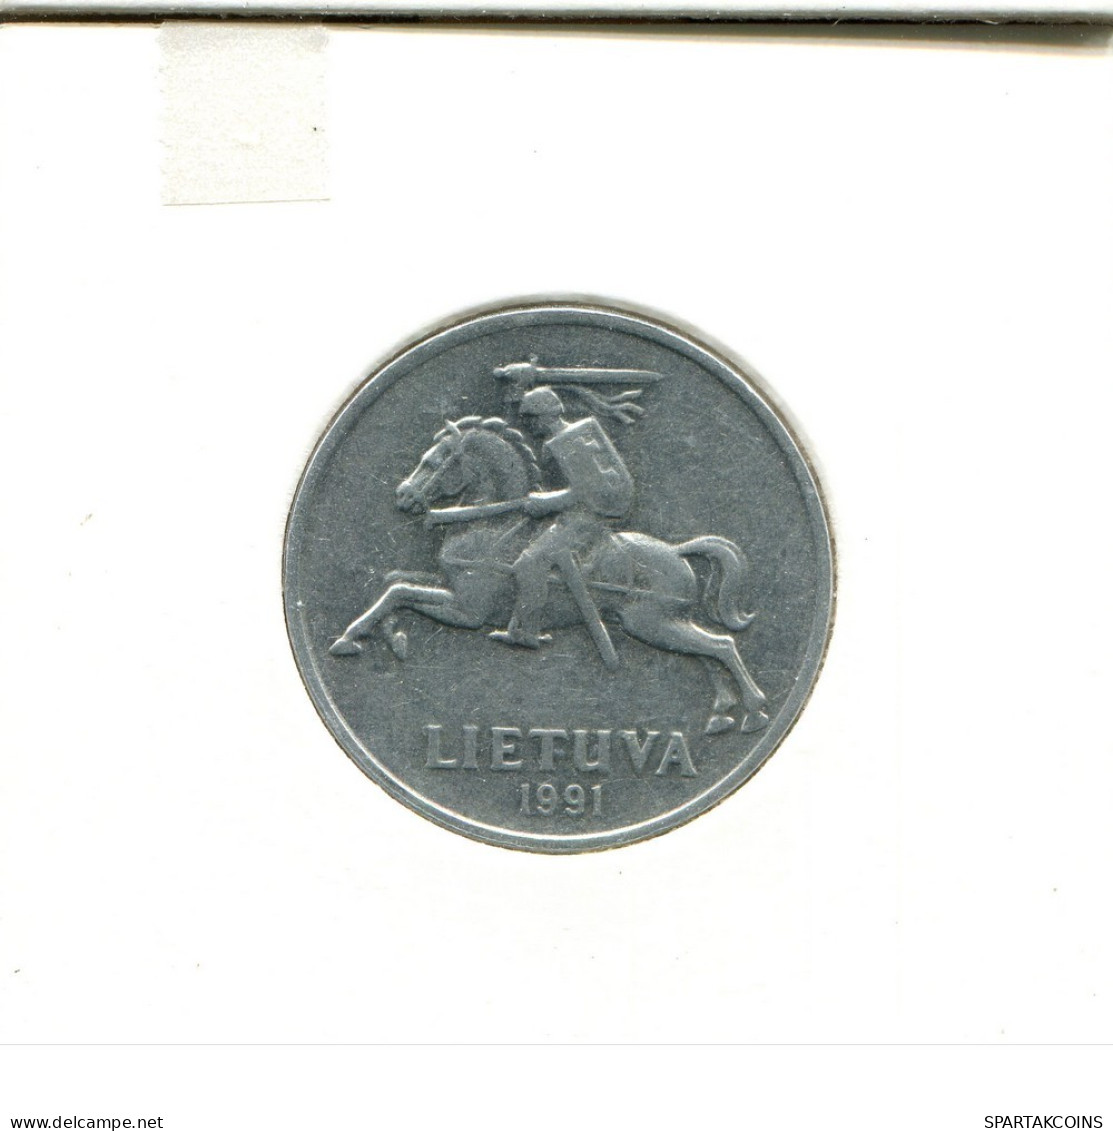 5 CENTAI 1991 LITHUANIA Coin #AS695.U.A - Litouwen